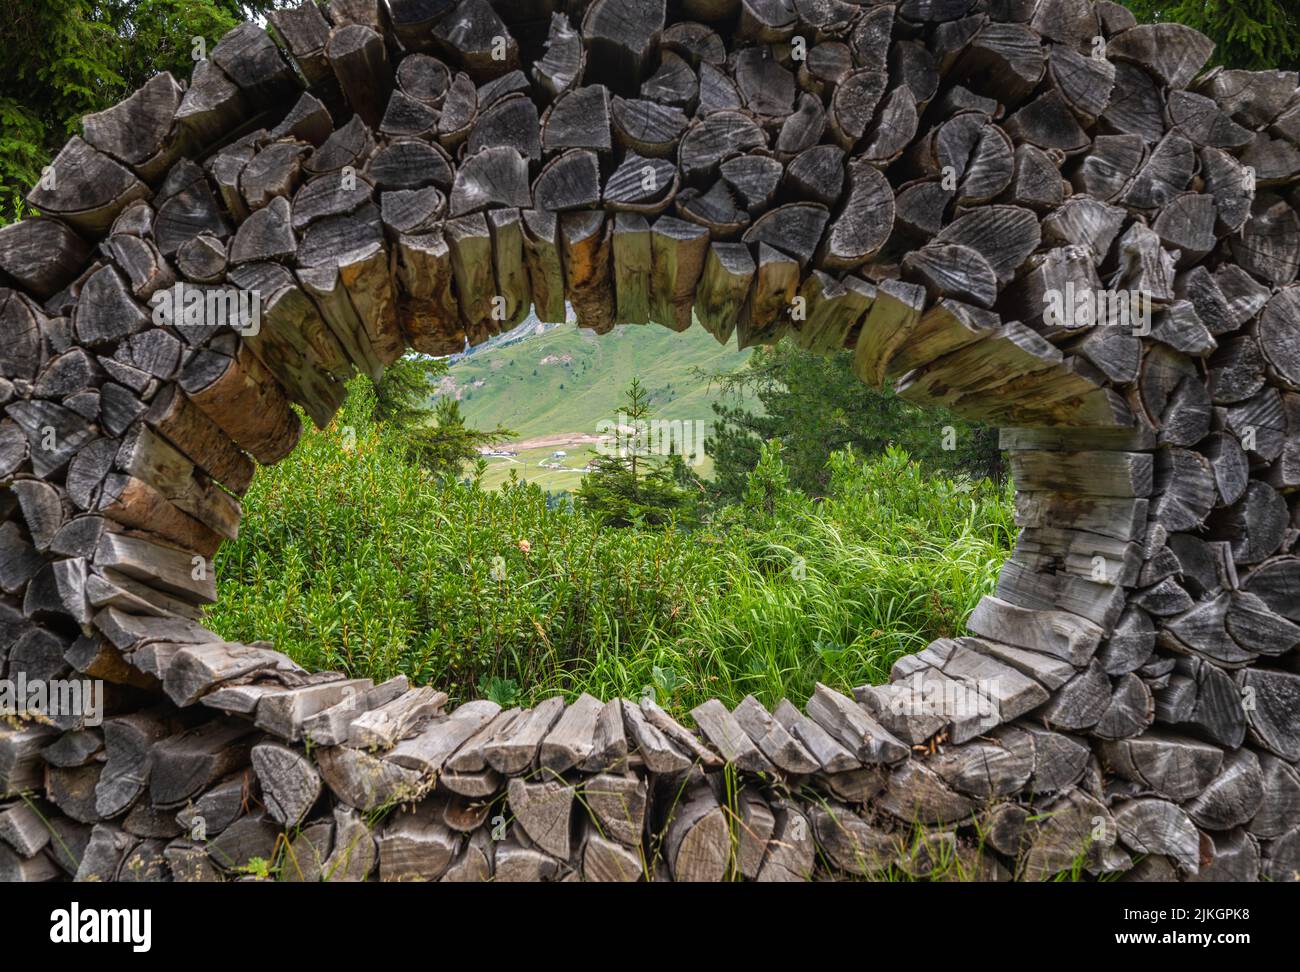 Kunstinstallationen interagieren mit der Natur der Dolomiten, die von der UNESCO zum Weltnaturerbe erklärt wurden - Pampeago-Dolomite Trentino, Italien Stockfoto